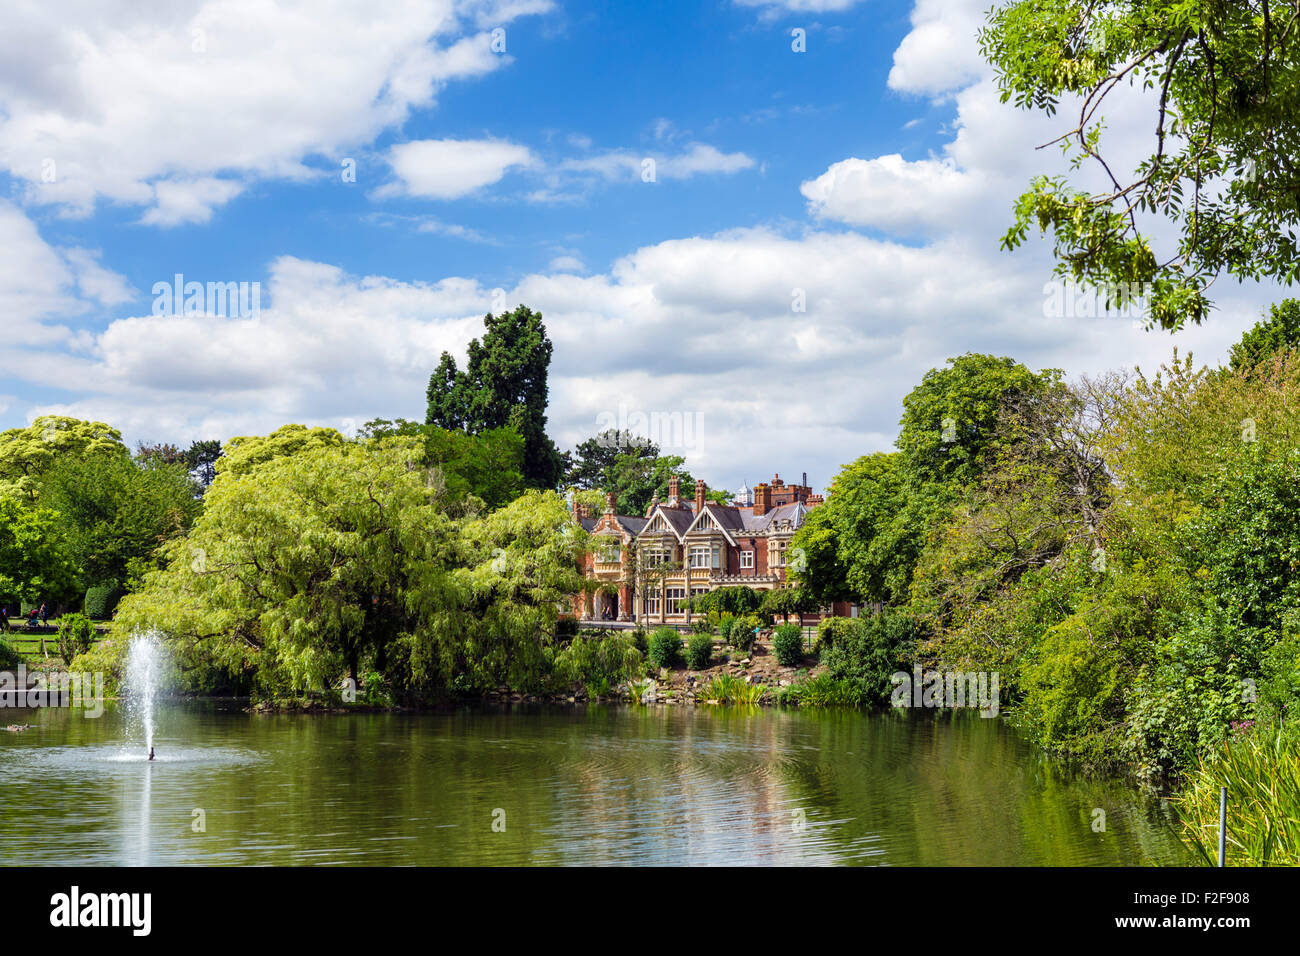 Le lac et l'hôtel particulier à Bletchley Park, Buckinghamshire, England, UK Banque D'Images